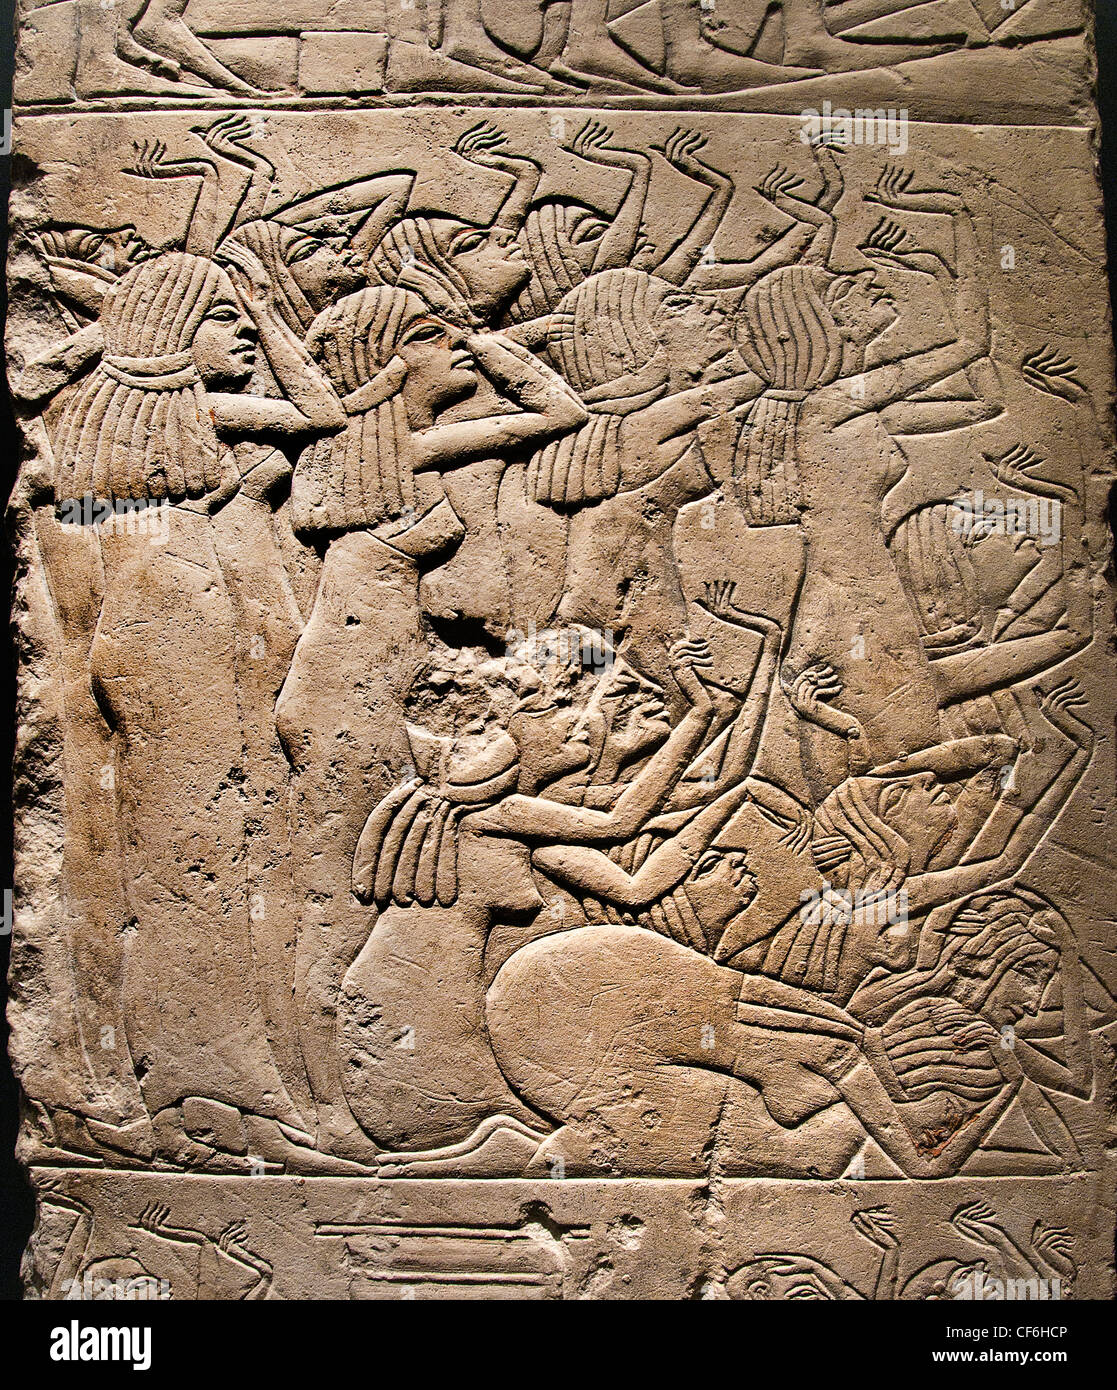 Lors des funérailles des lamentations autour de 1330 BC Saqqara tombe Egypte hiéroglyphe égyptien Banque D'Images